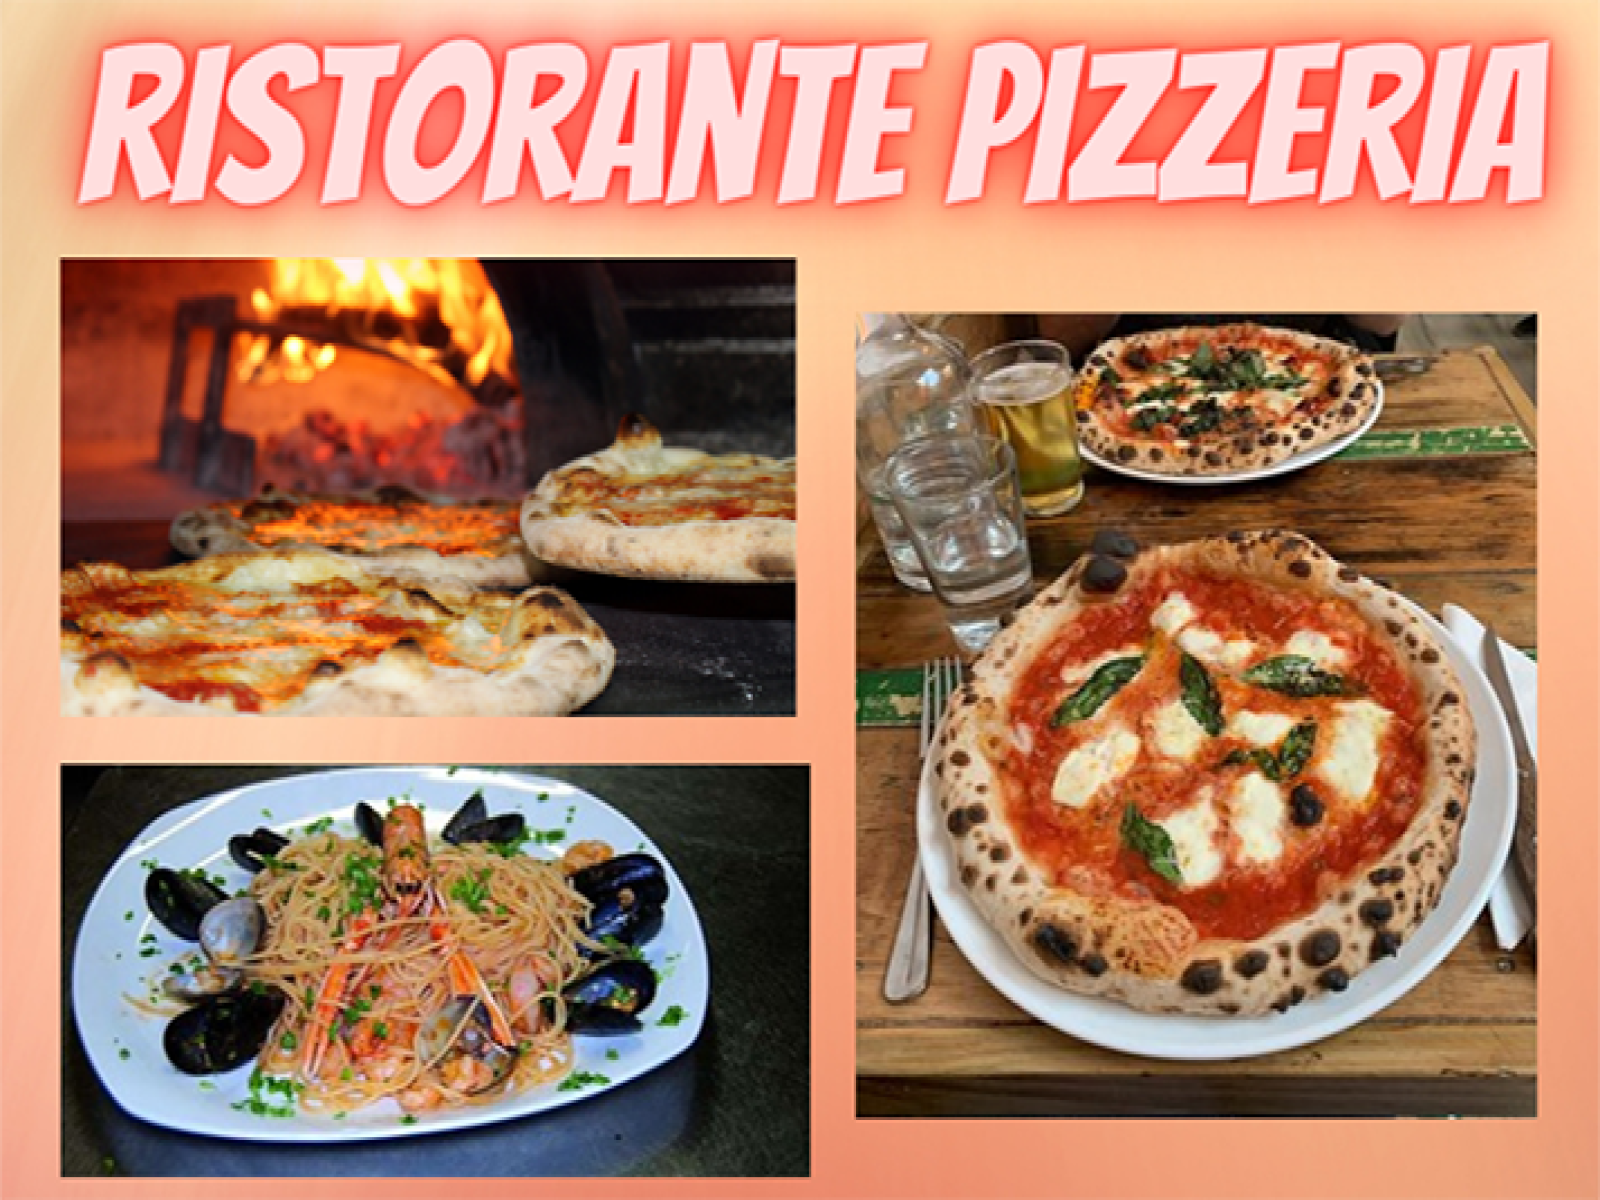 Ristorante pizzeria - rif. Bor128/23